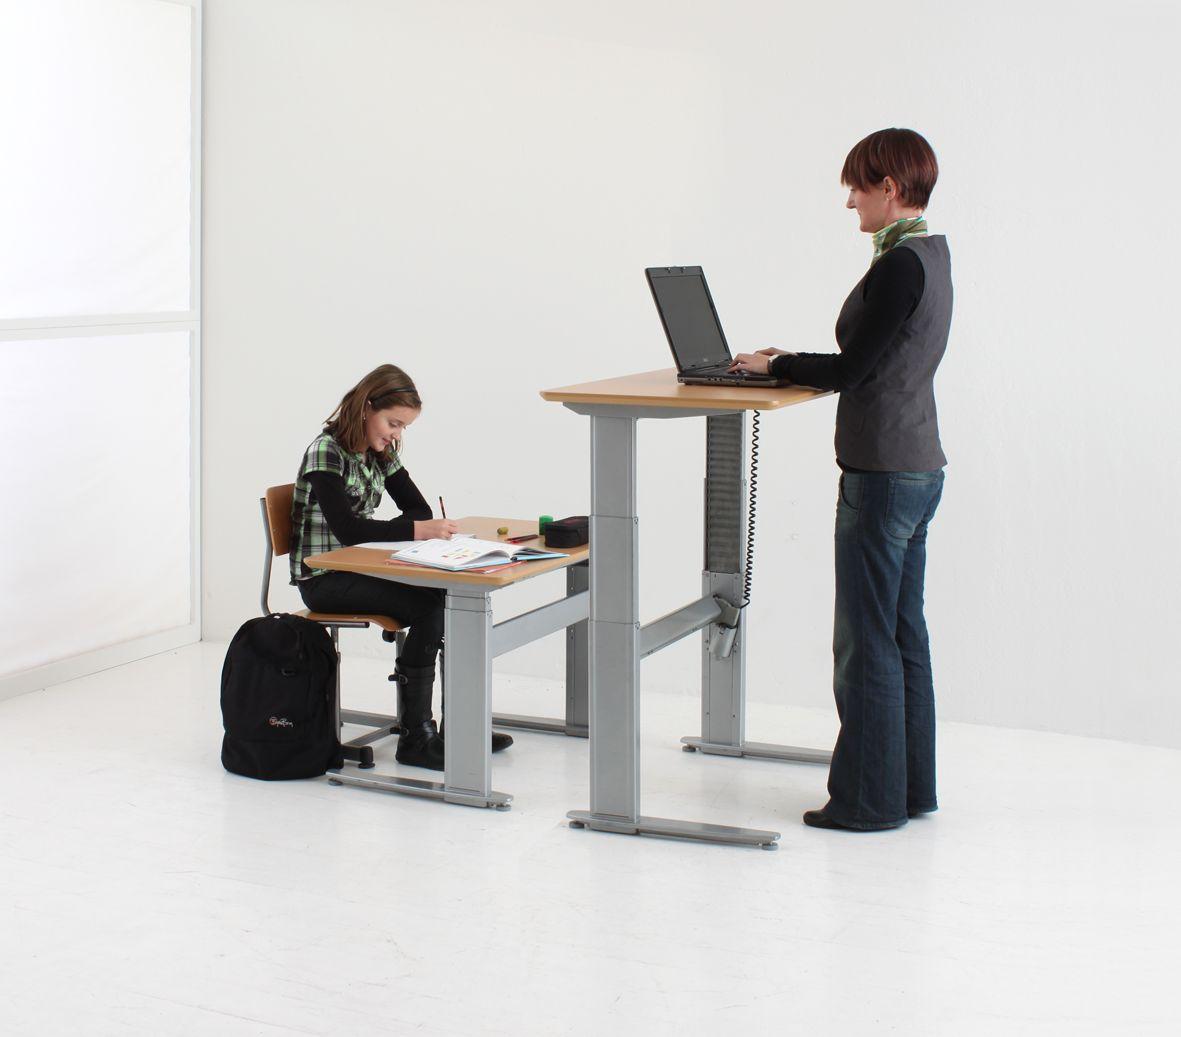 Стоячий столик. Офисный стол стоячий. Стоячие столы для офиса. Компьютерный стол стоячий. Стол с изменяемой высотой.